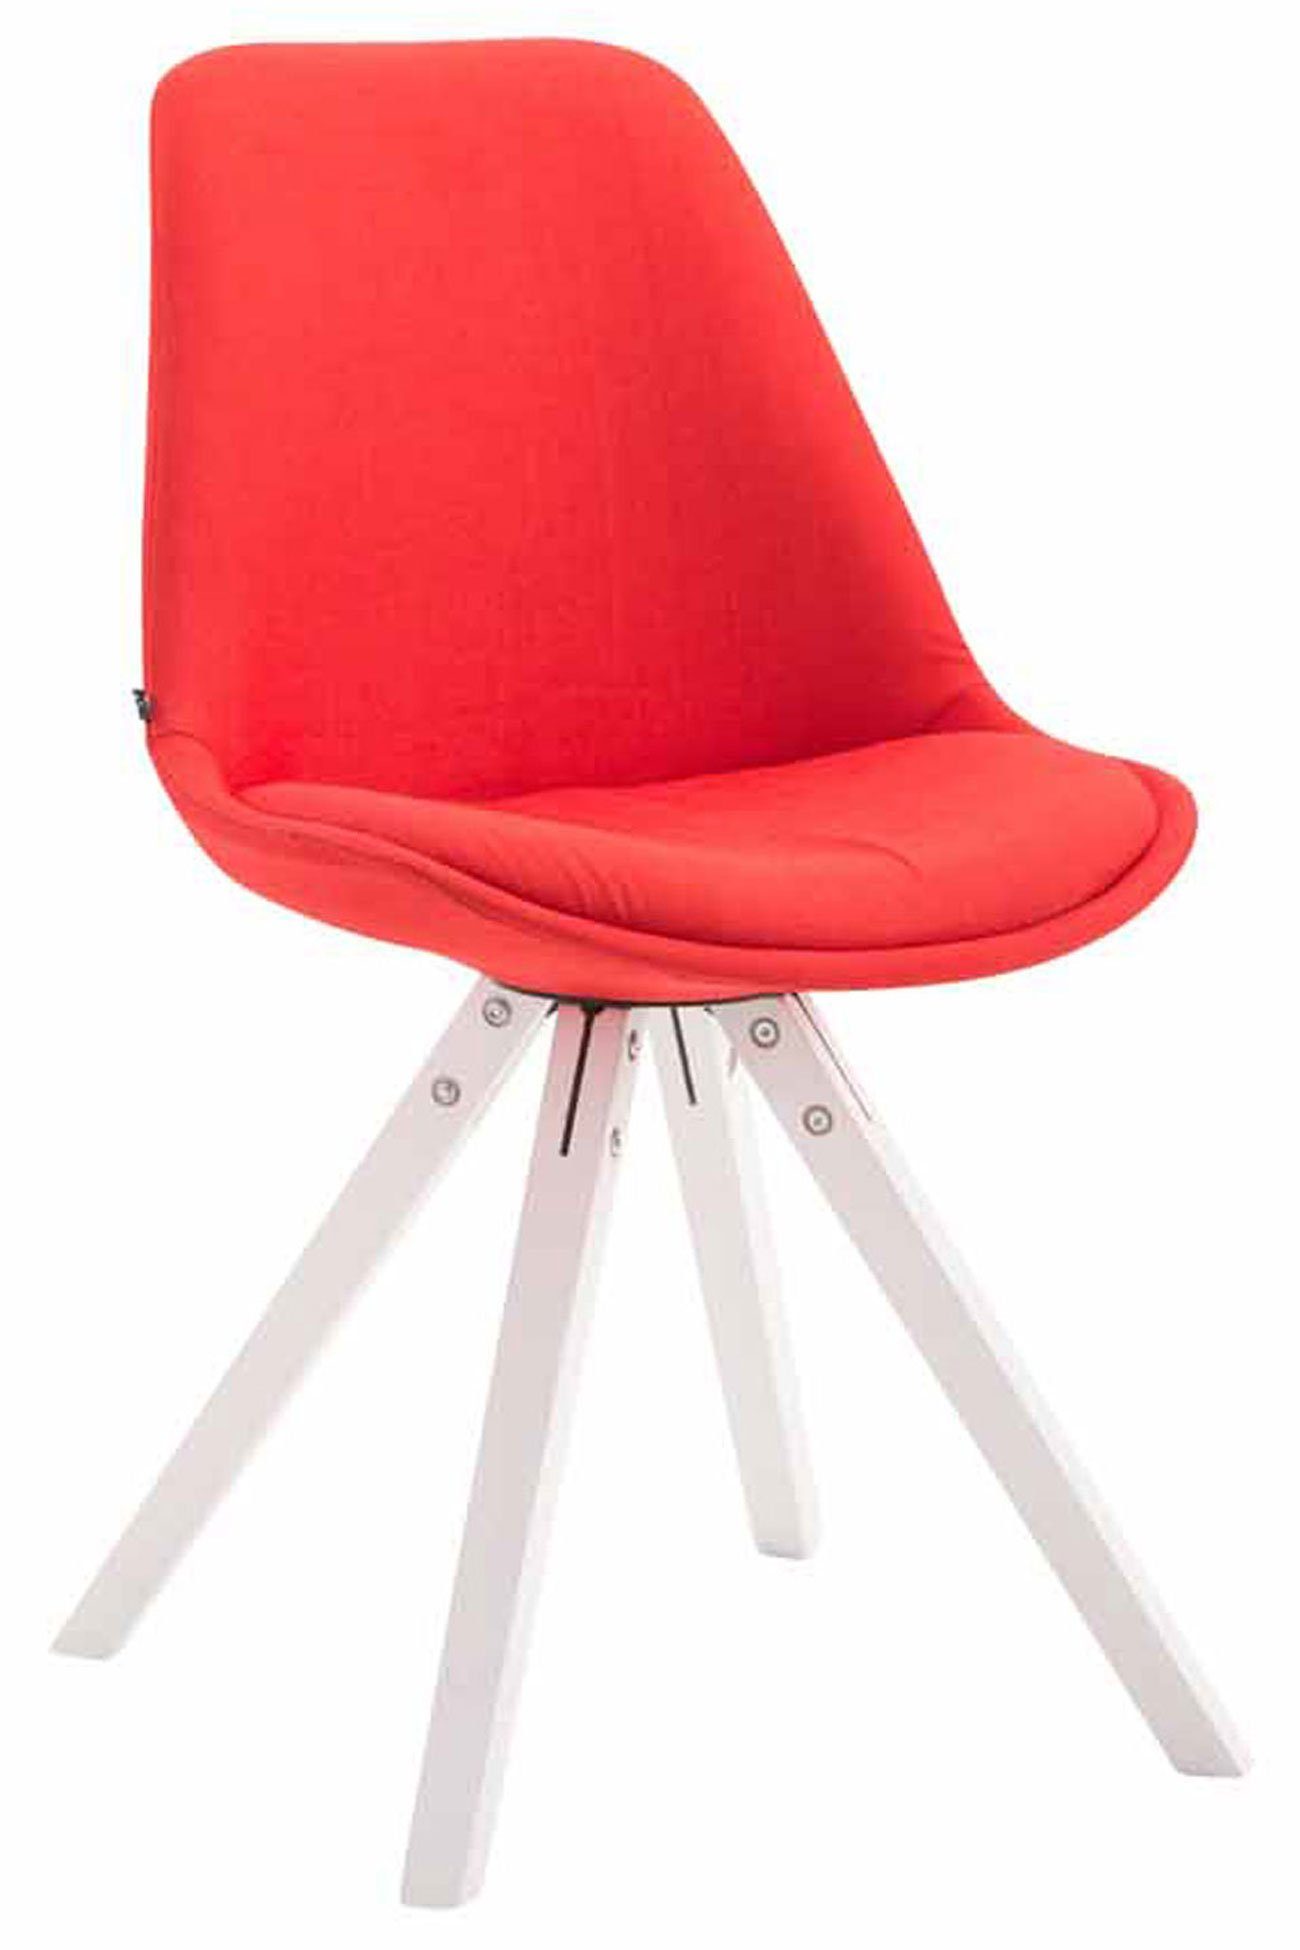 [VERKAUF] TPFLiving Besucherstuhl Toulon Gestell: square rot weiß Stoff gepolsterter (Küchenstuhl Buchenholz Konferenzstuhl Sitzfläche: - - hochwertig Sitzfläche - mit Wohnzimmerstuhl), - Esszimmerstuhl